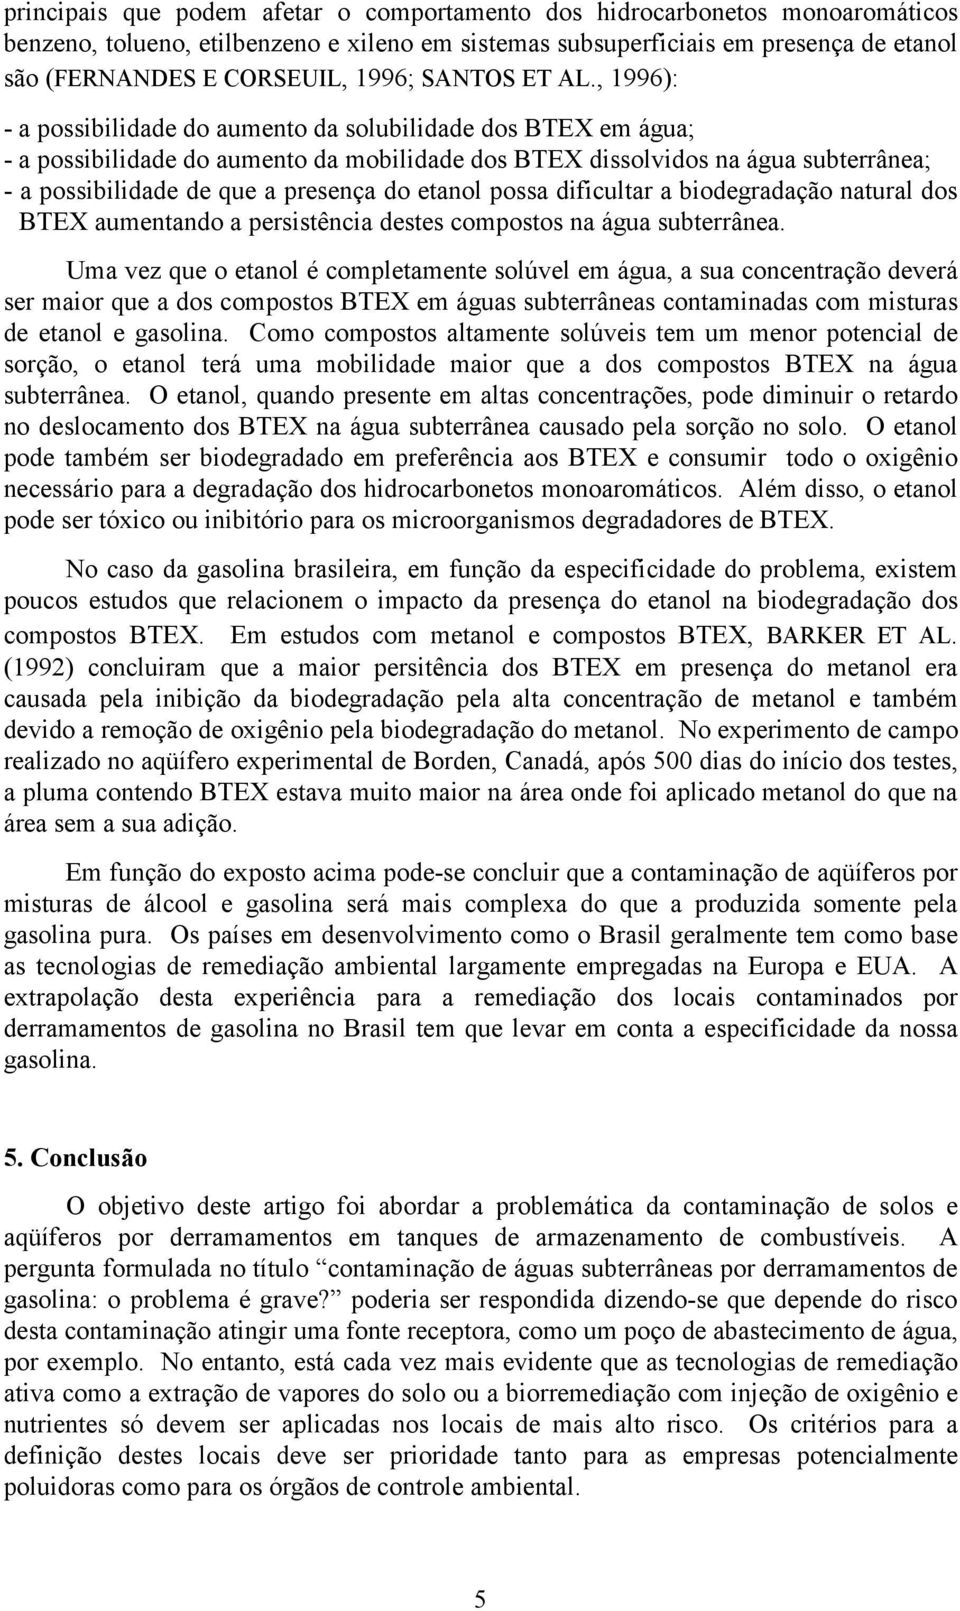 , 1996): - a possibilidade do aumento da solubilidade dos BTEX em água; - a possibilidade do aumento da mobilidade dos BTEX dissolvidos na água subterrânea; - a possibilidade de que a presença do